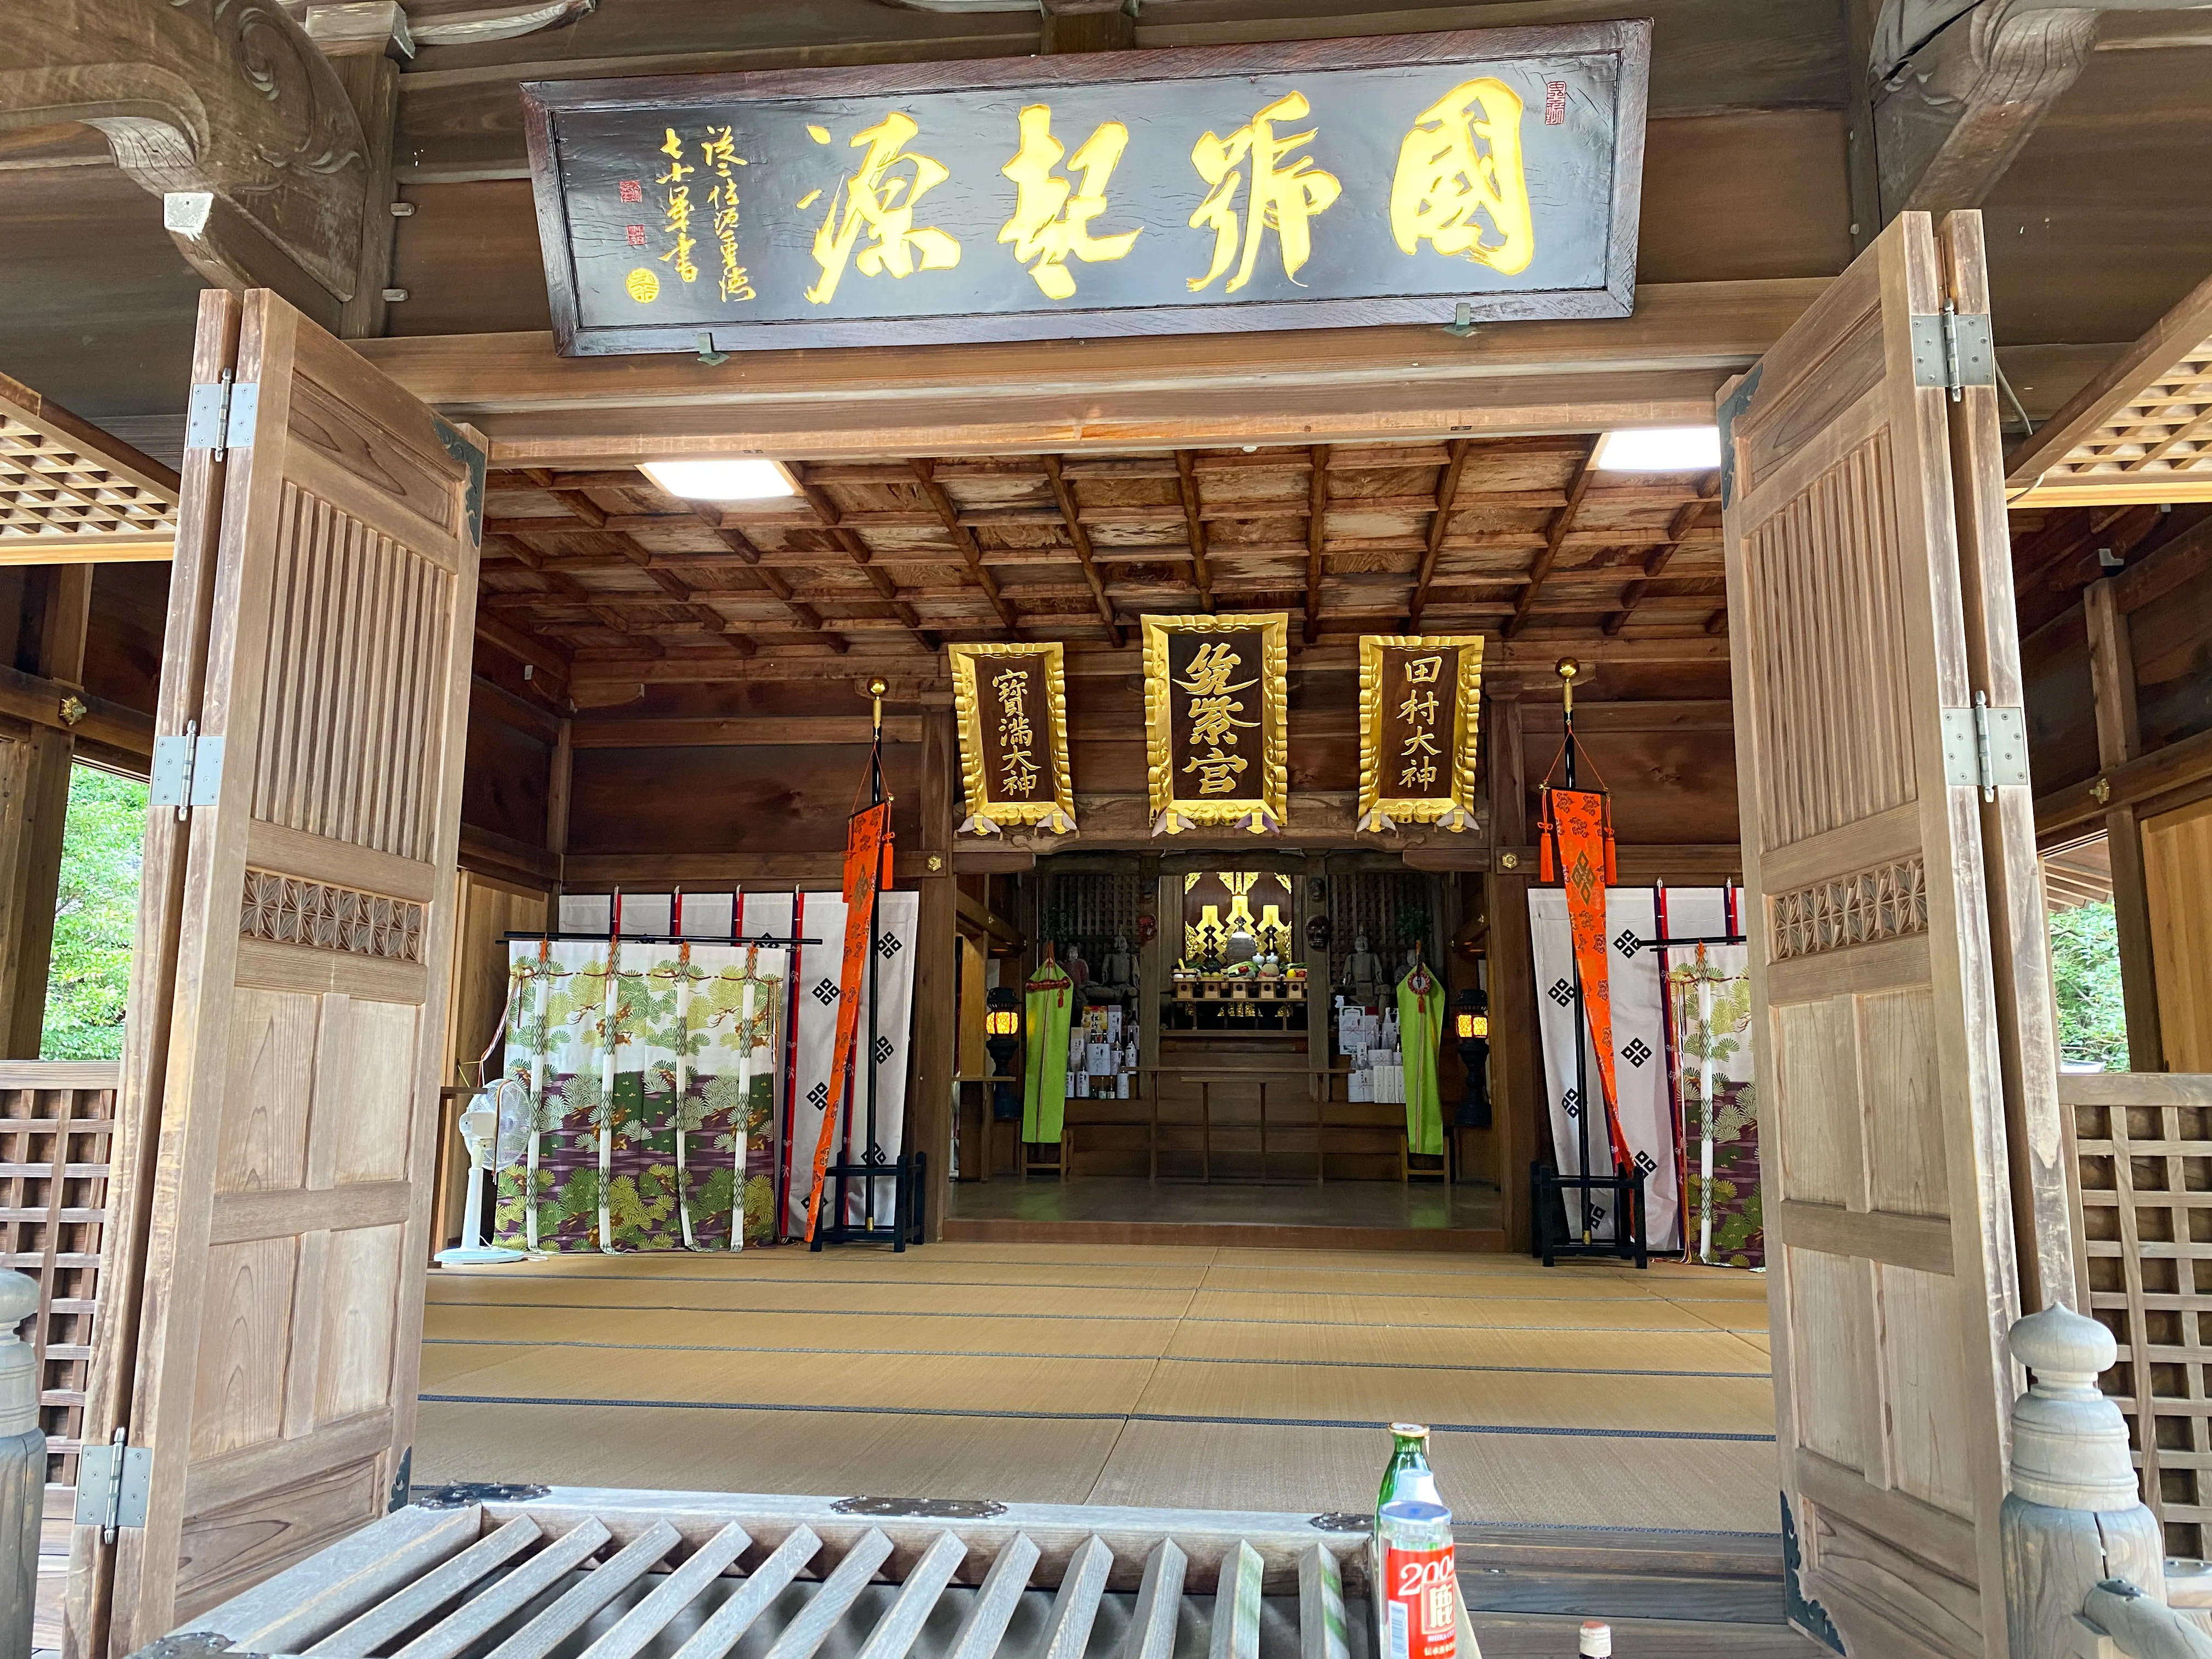 「筑紫神社」本殿中